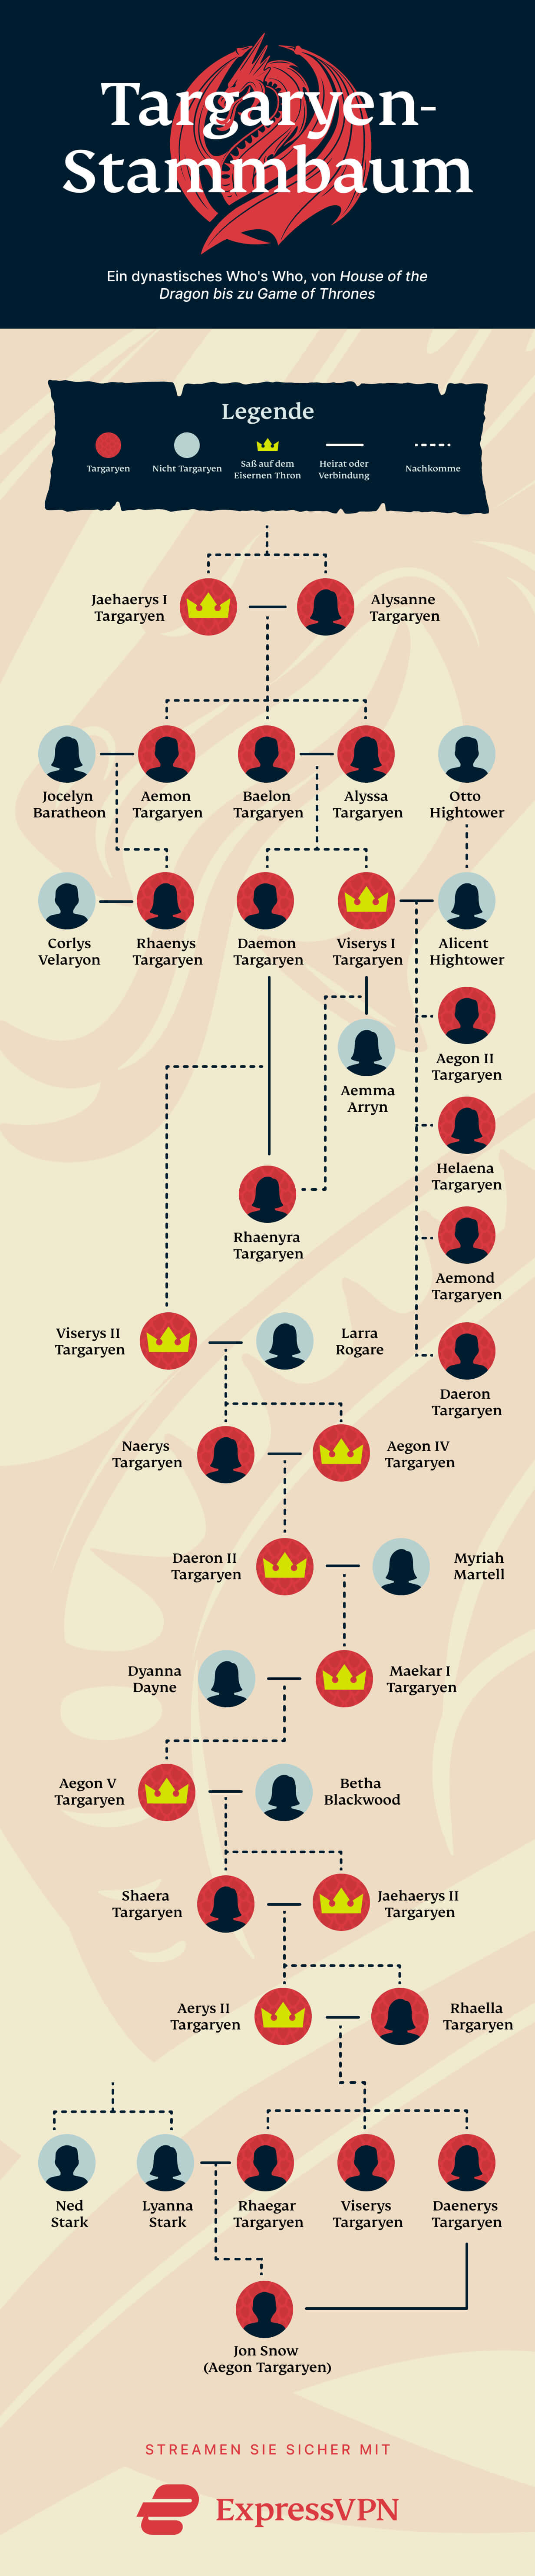 Infografik des Targaryen-Stammbaums: von House of the Dragon zu Game of Thrones